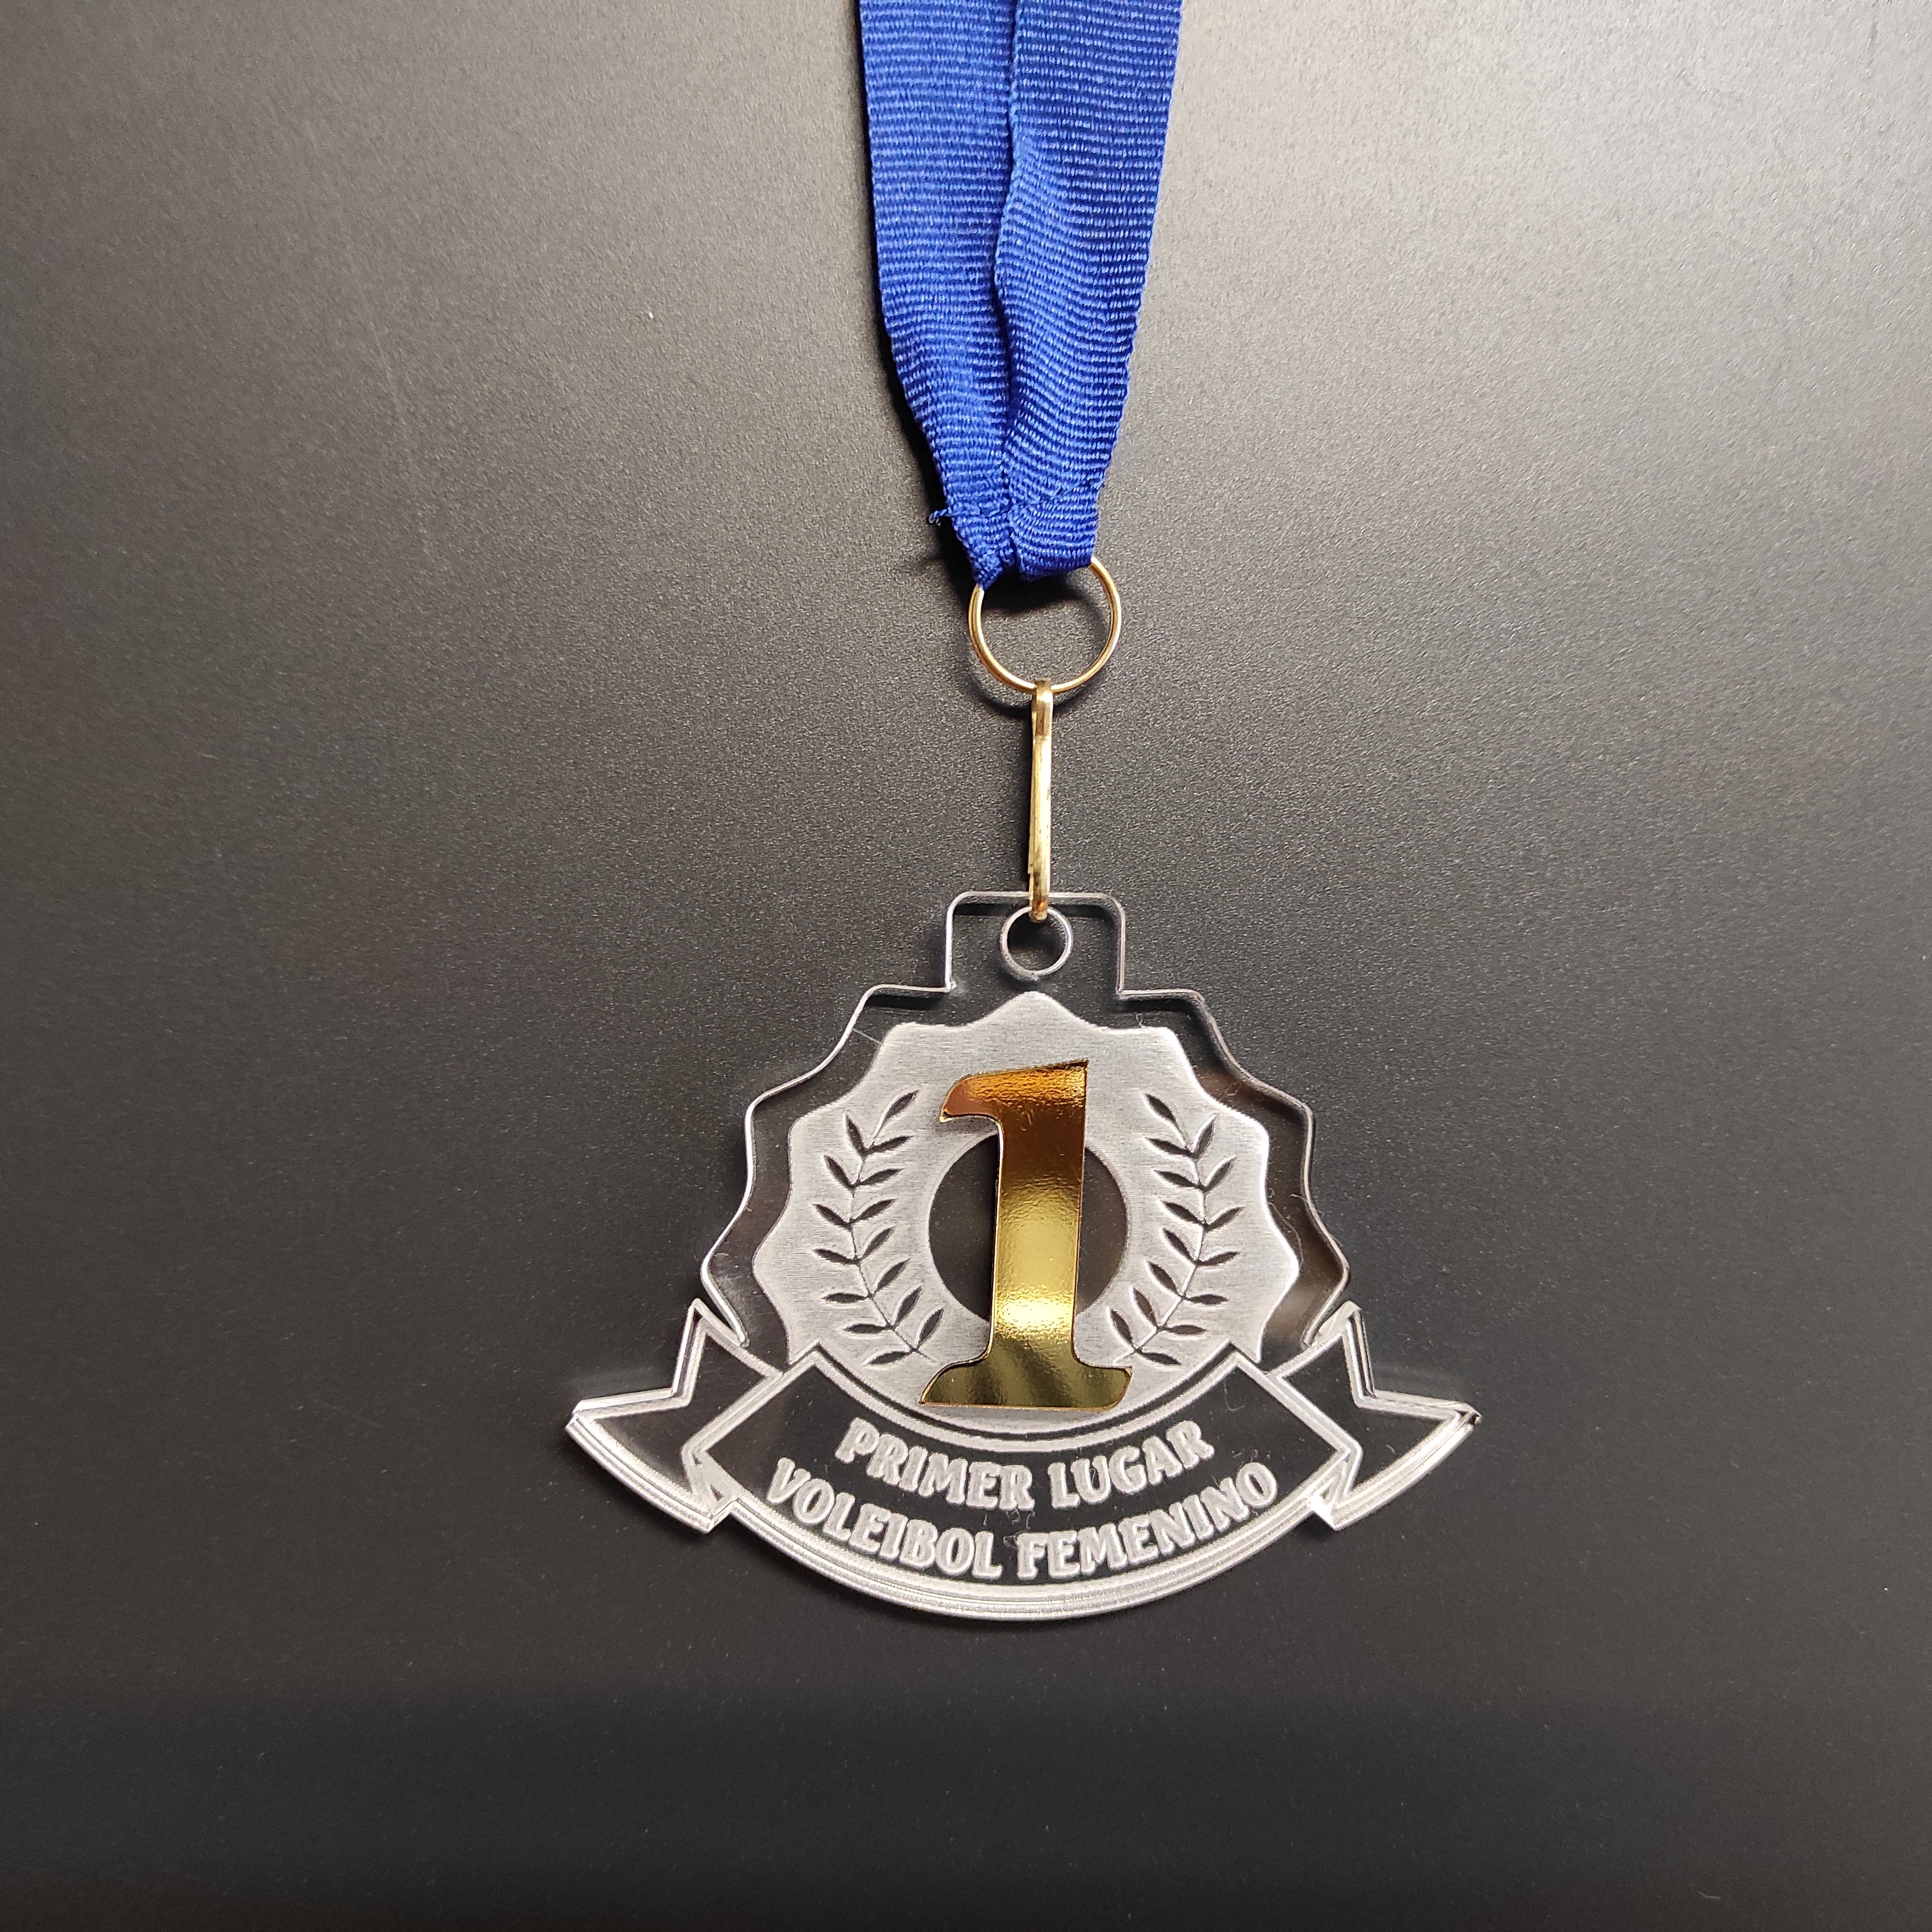 Medalla para premiación línea Prime Primer lugar